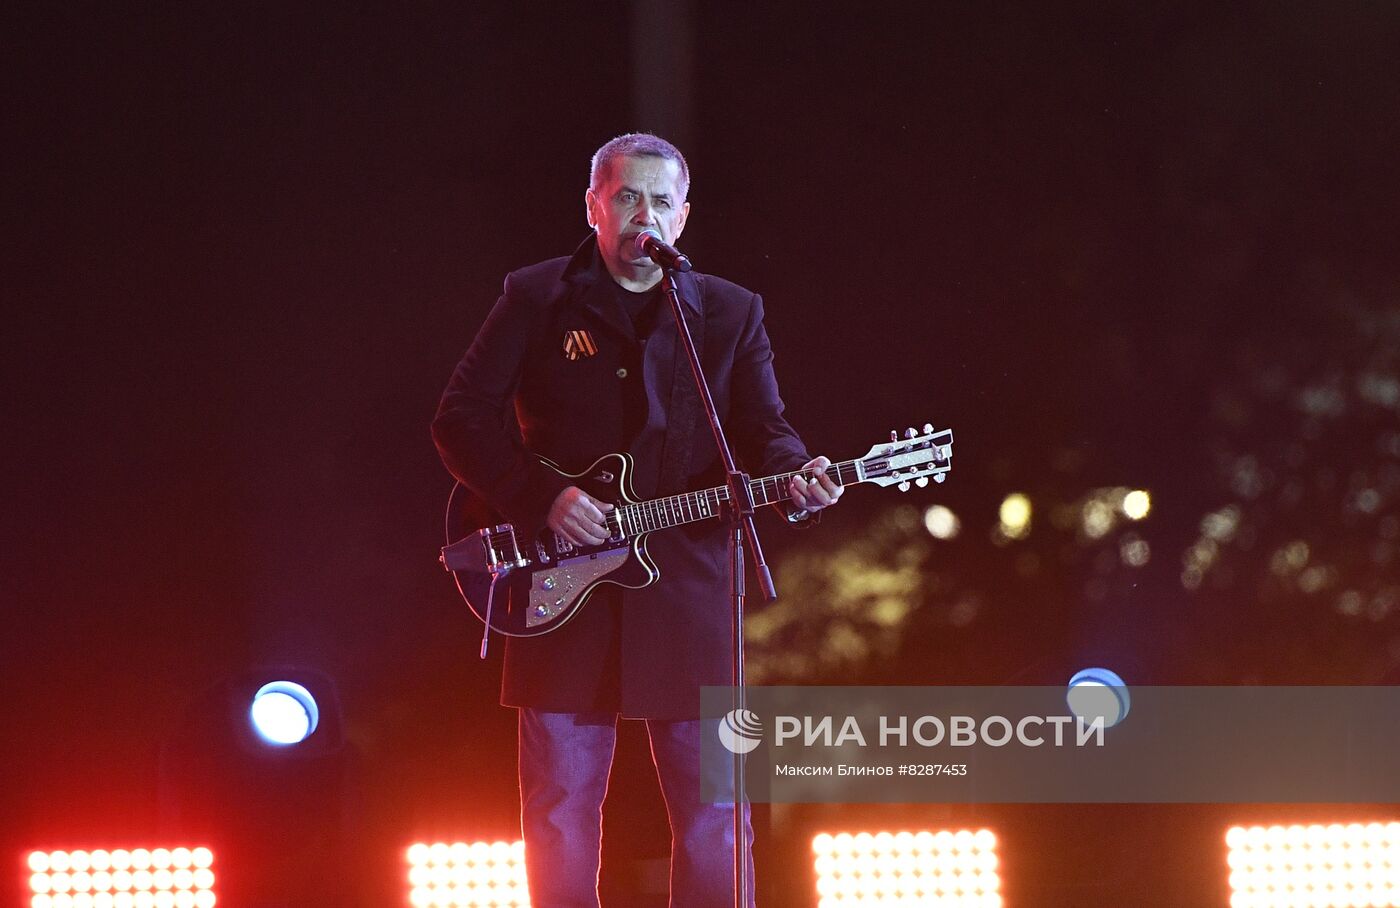 Президент РФ В. Путин принял участие в митинге-концерте на Красной площади